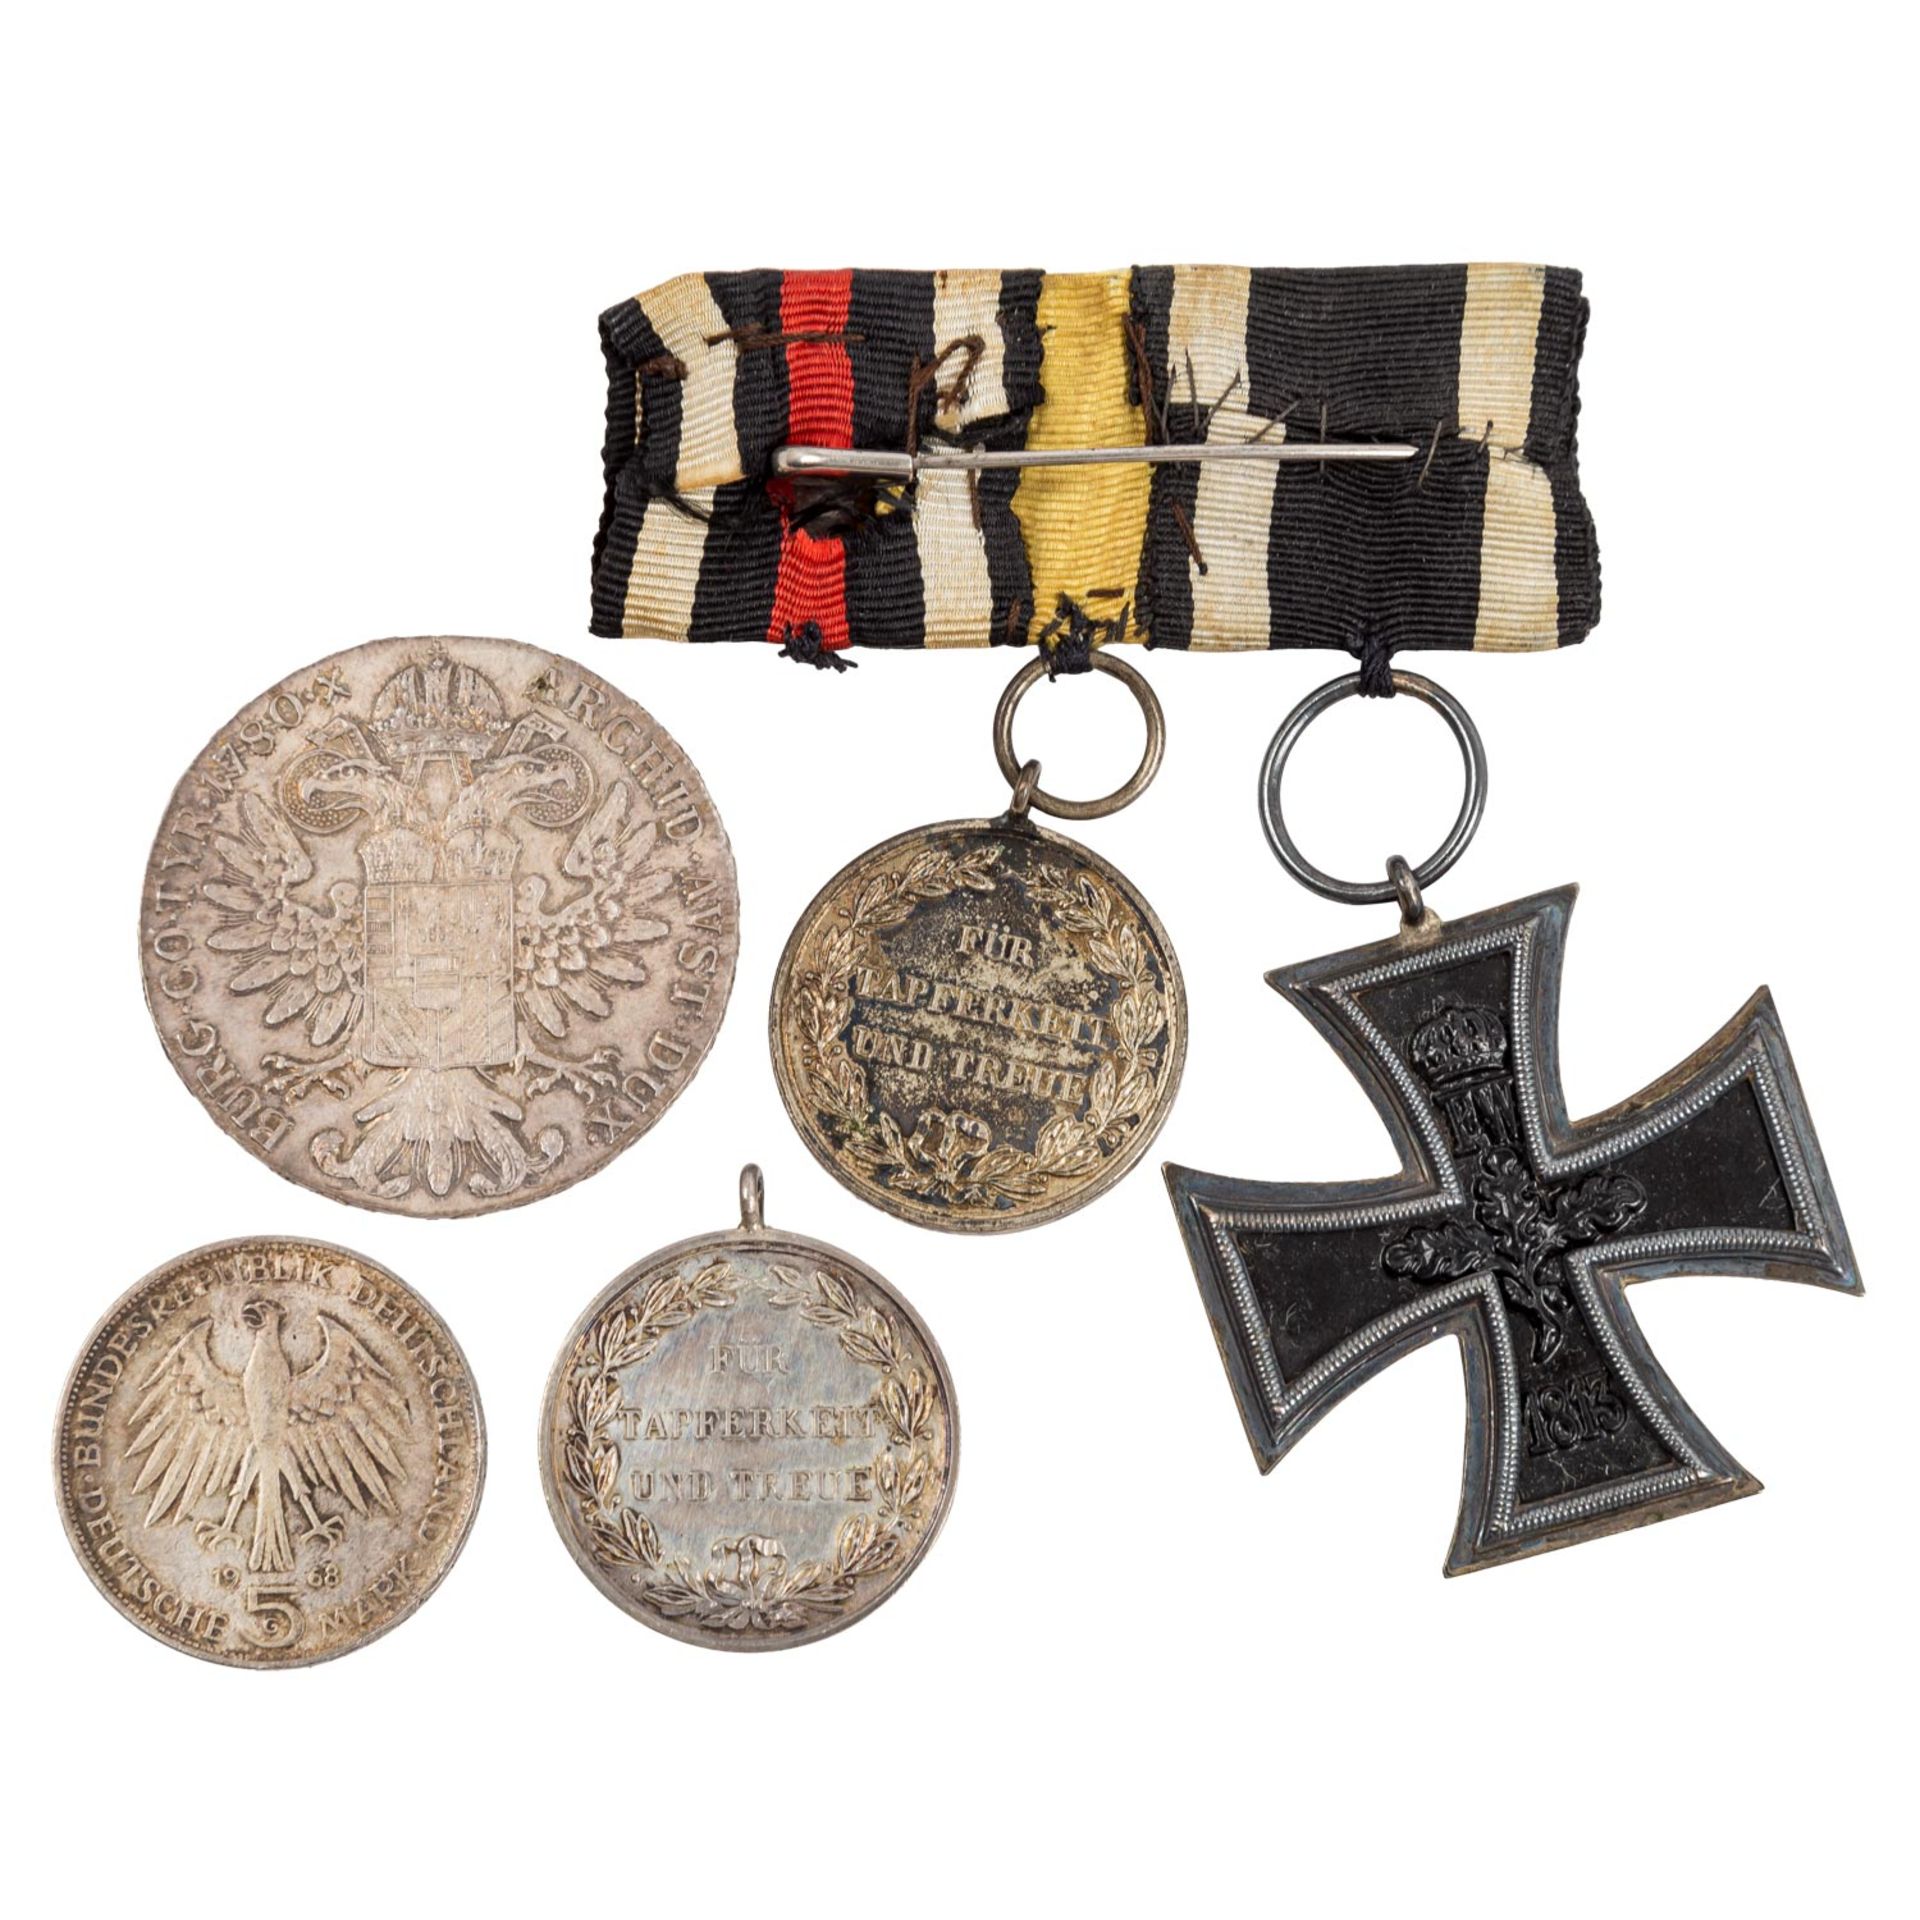 Medaillen, Auszeichnungen, Münzen, darunter Württemberg - Image 2 of 2